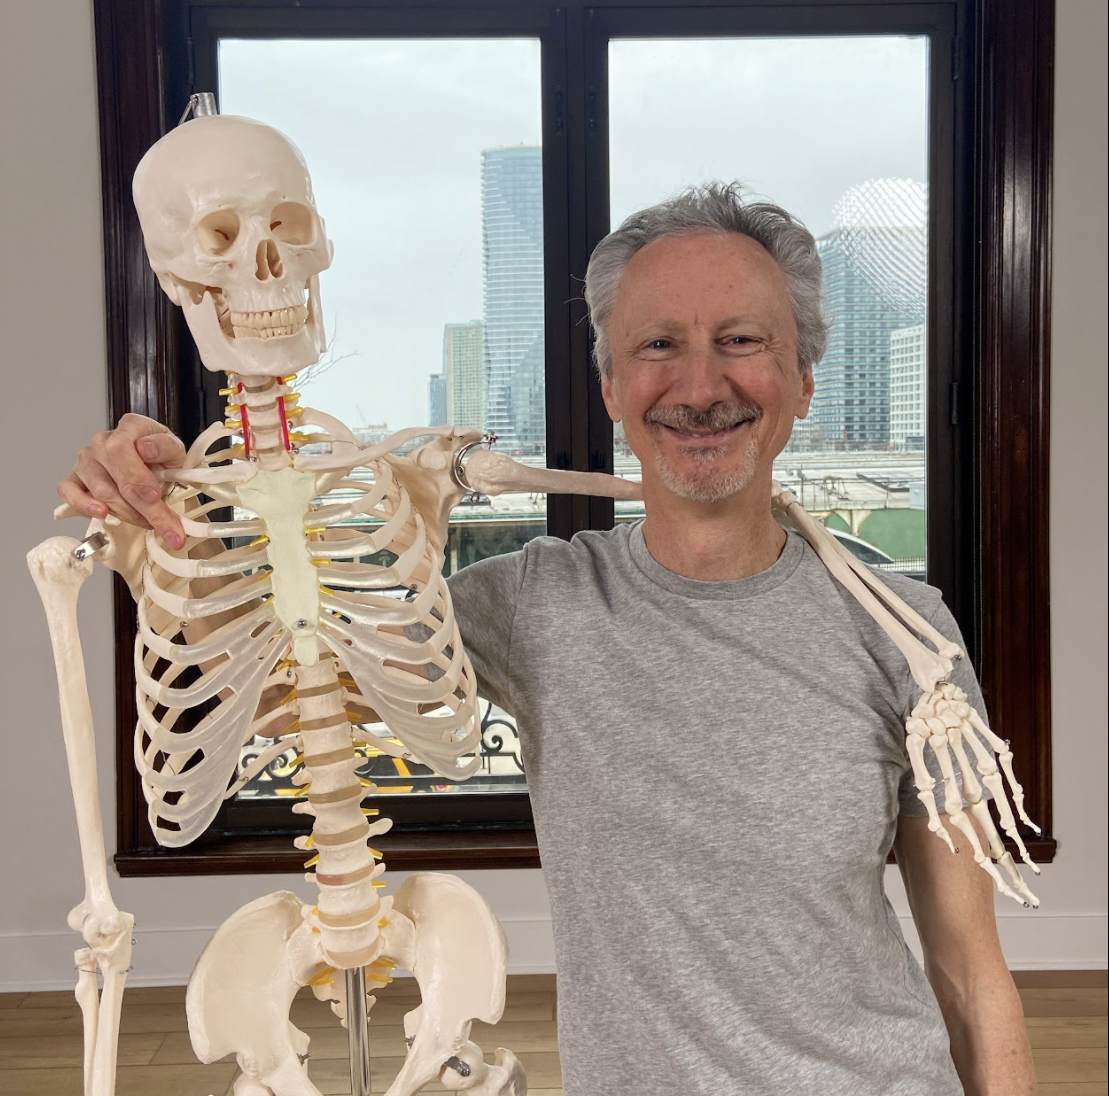 Joe posing with a skeleton